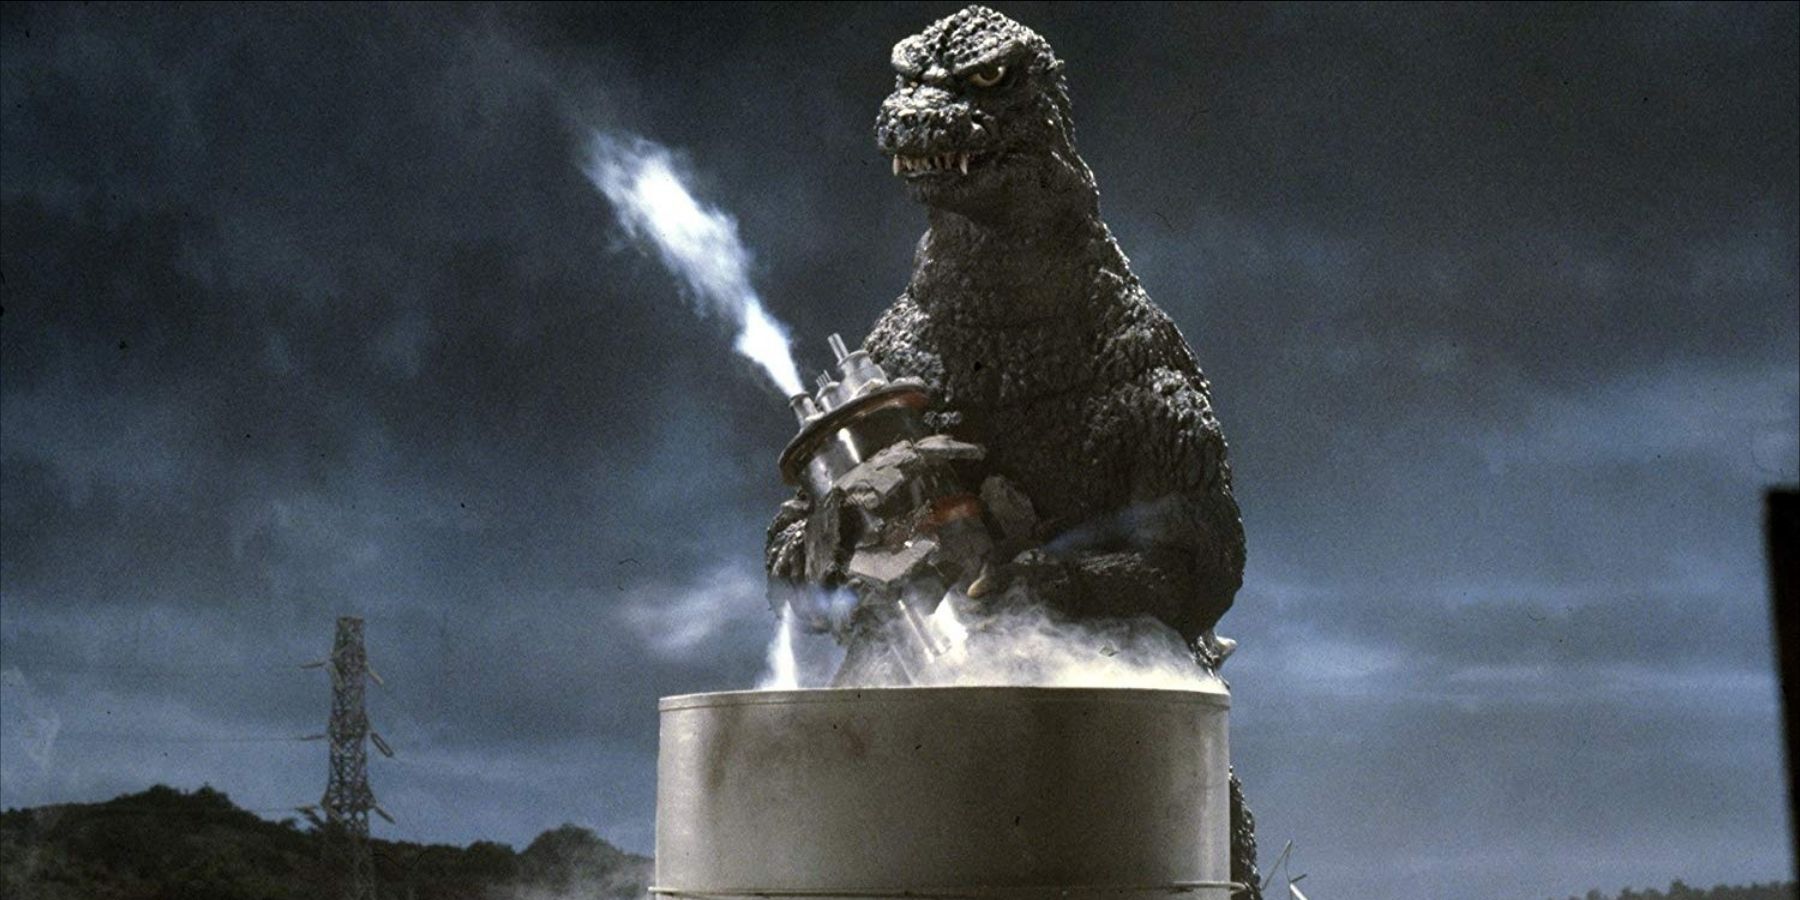 Godzilla atacando usina em Return of Godzilla